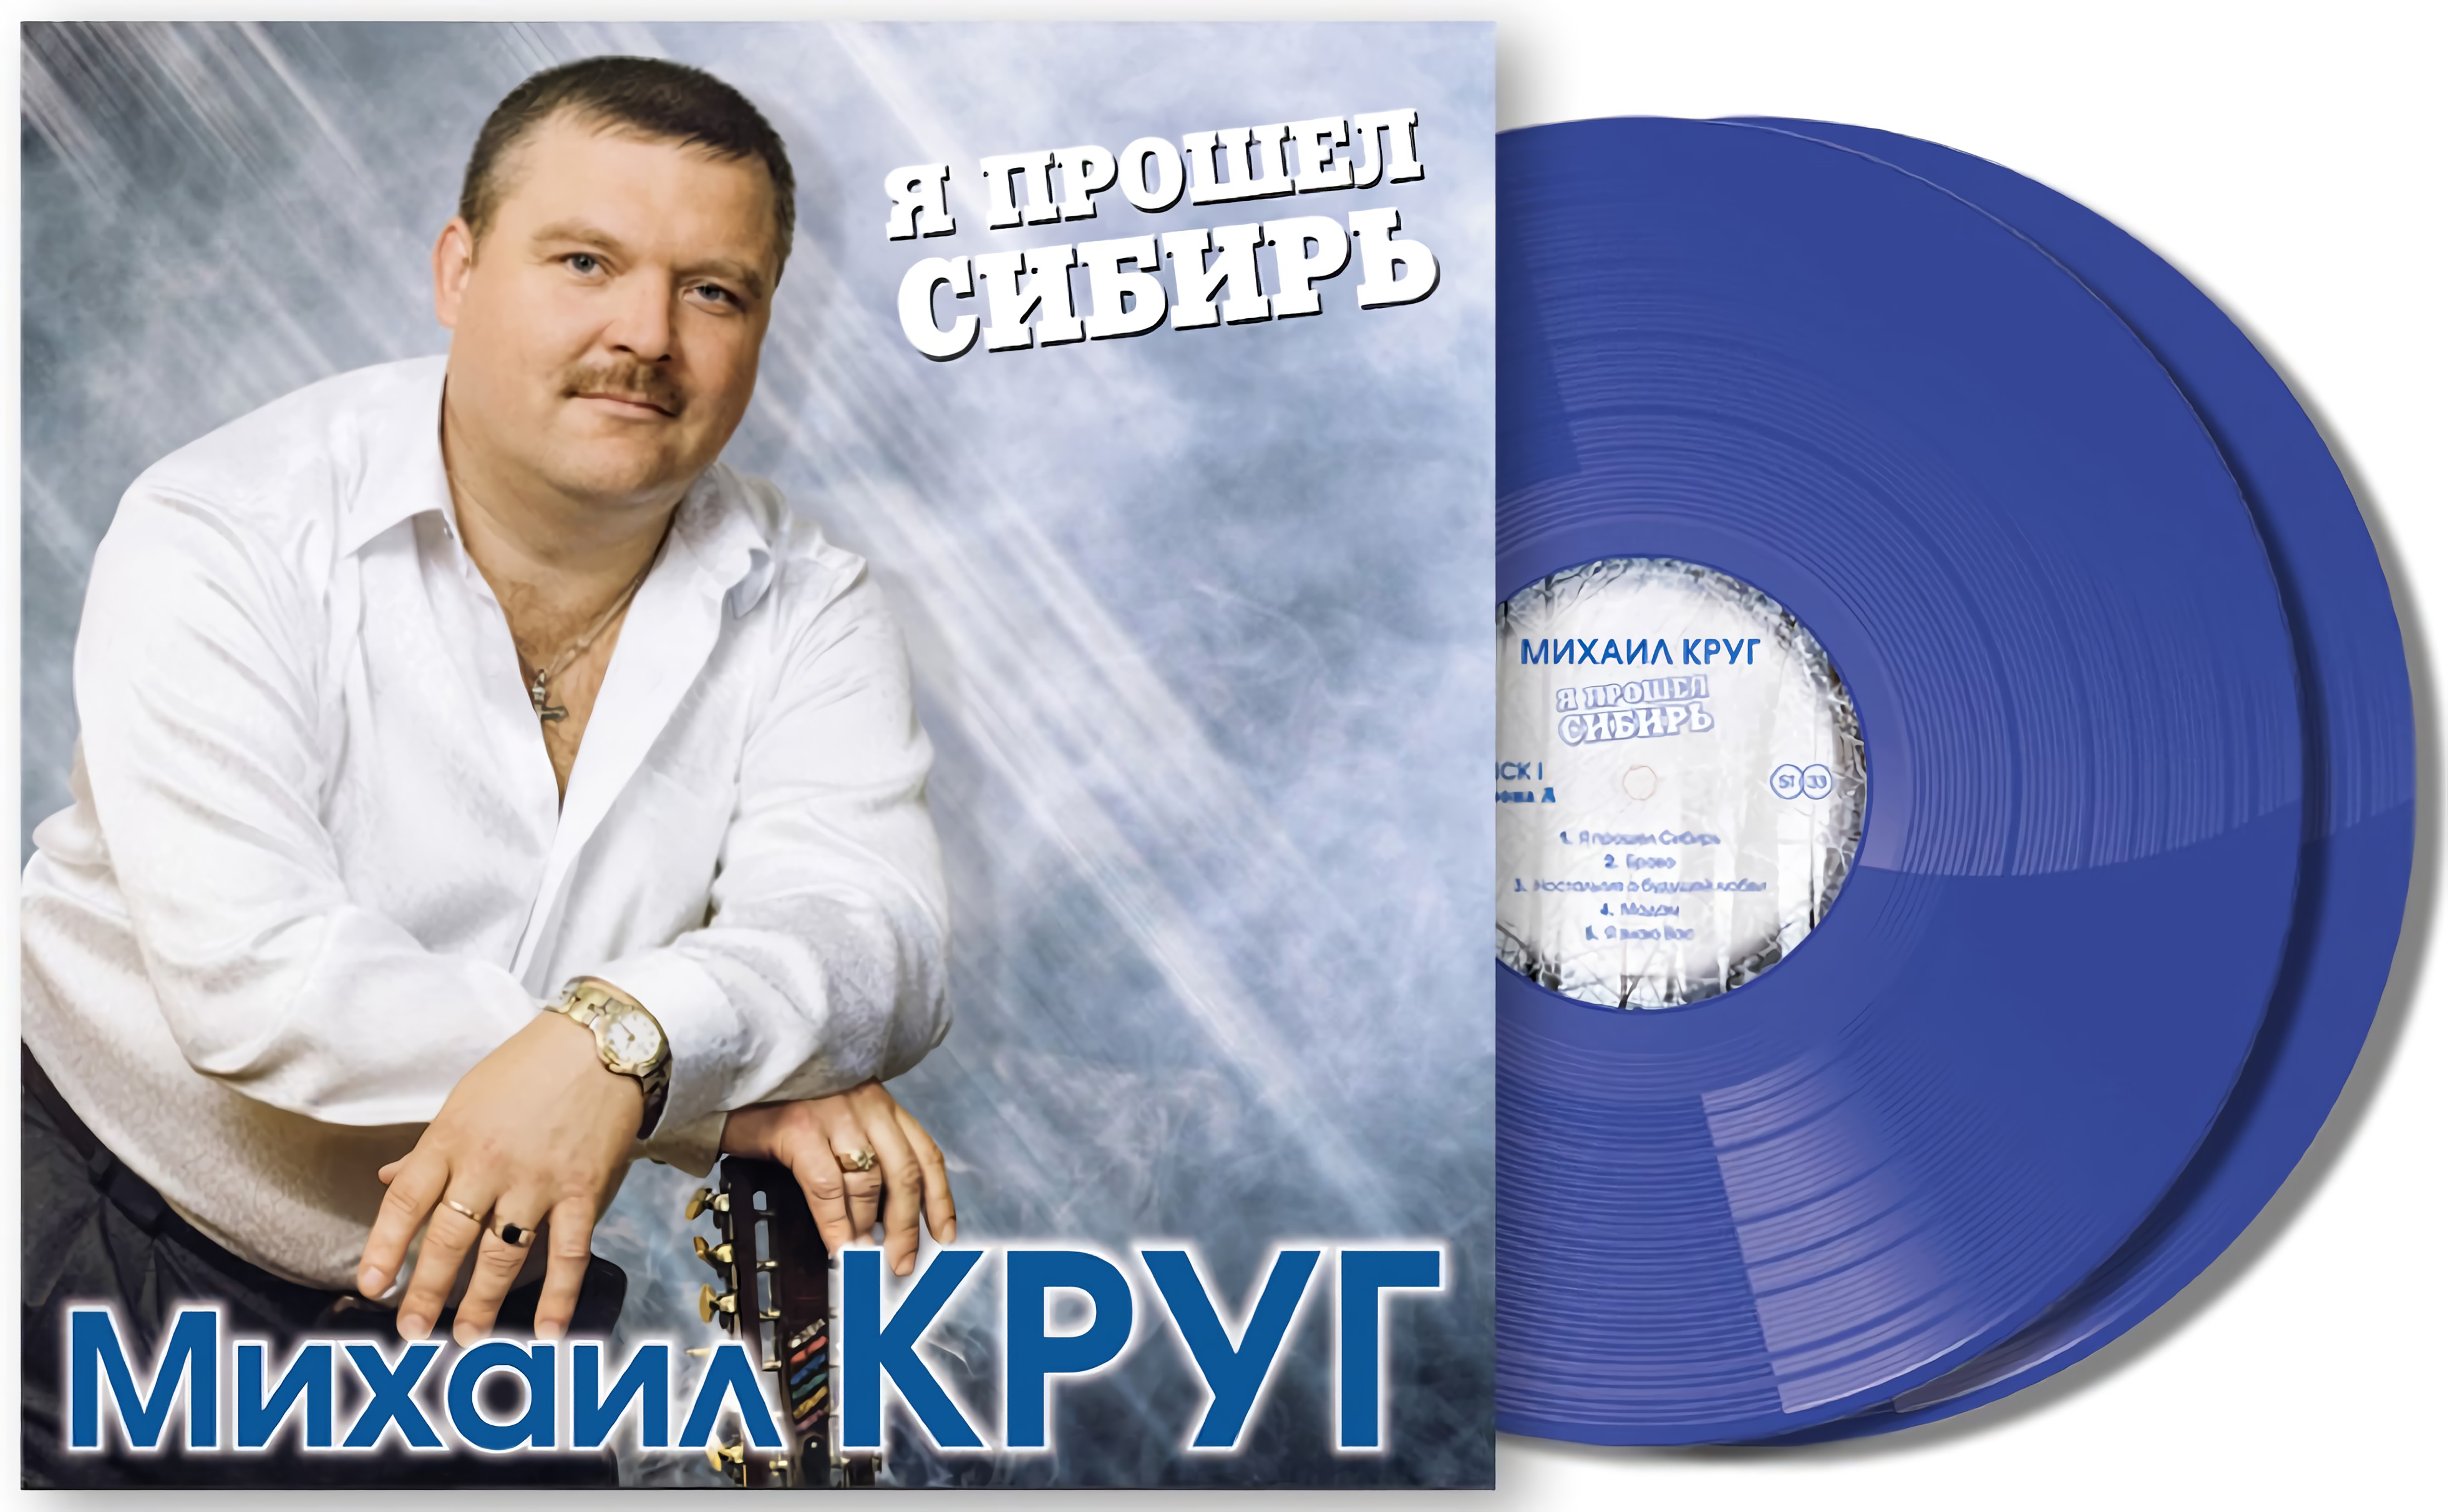 Михаил Круг – Я прошел Сибирь. Coloured Blue Vinyl (2 LP)